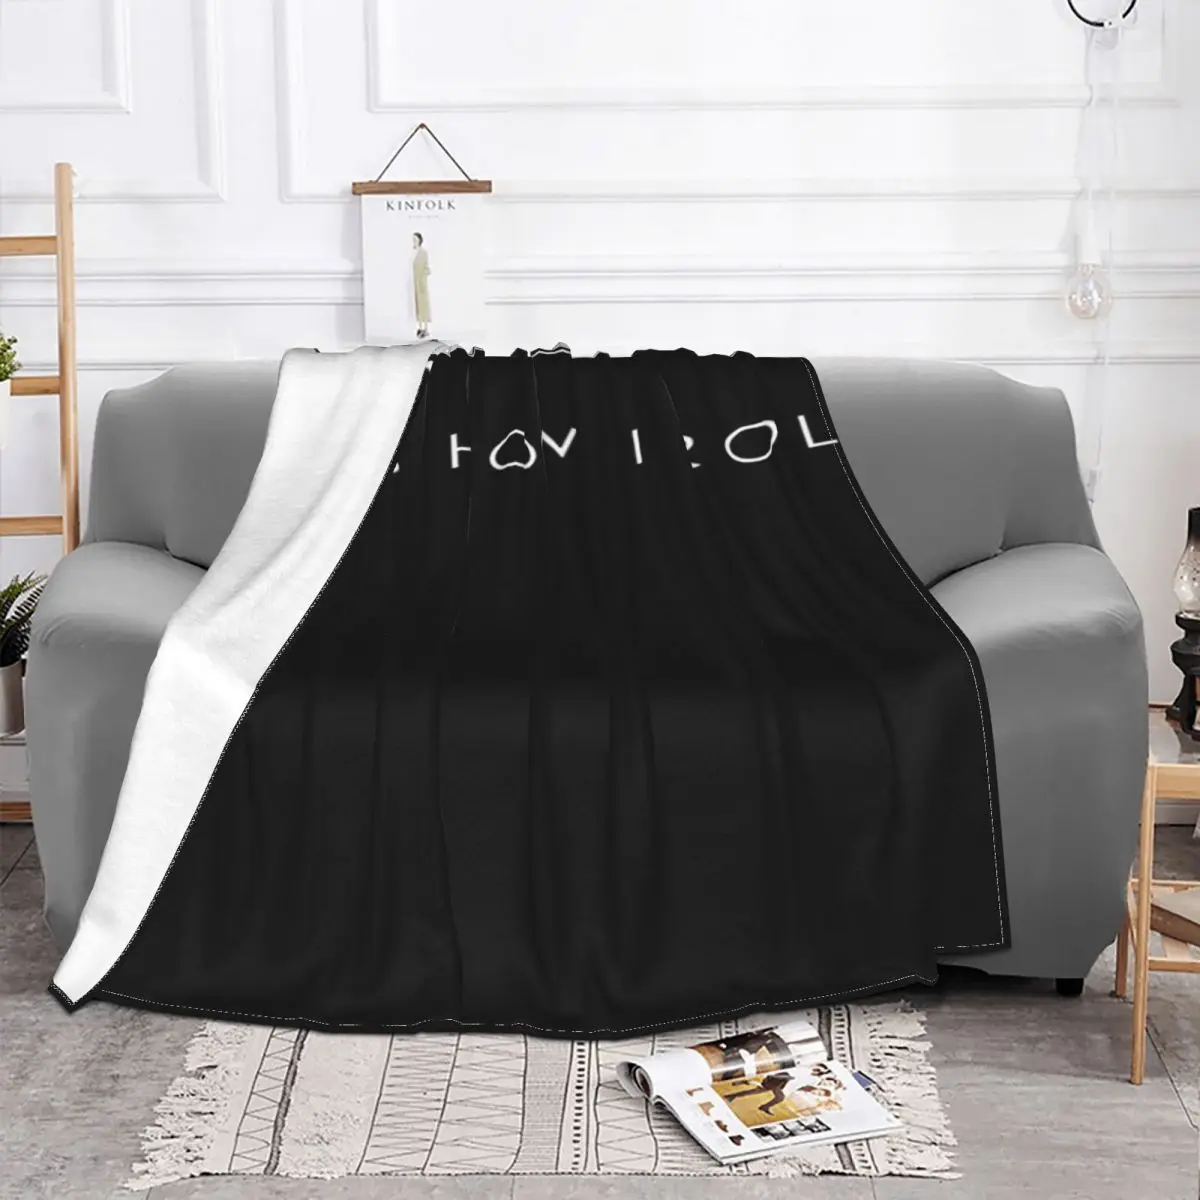 suave y acogedora manta para siesta COASTLINE Manta de punto ocre muy suave decorativa para sofá manta de cachemira 127 x 150 cm manta de viaje silla cama patrón de tejido delicado con flecos 